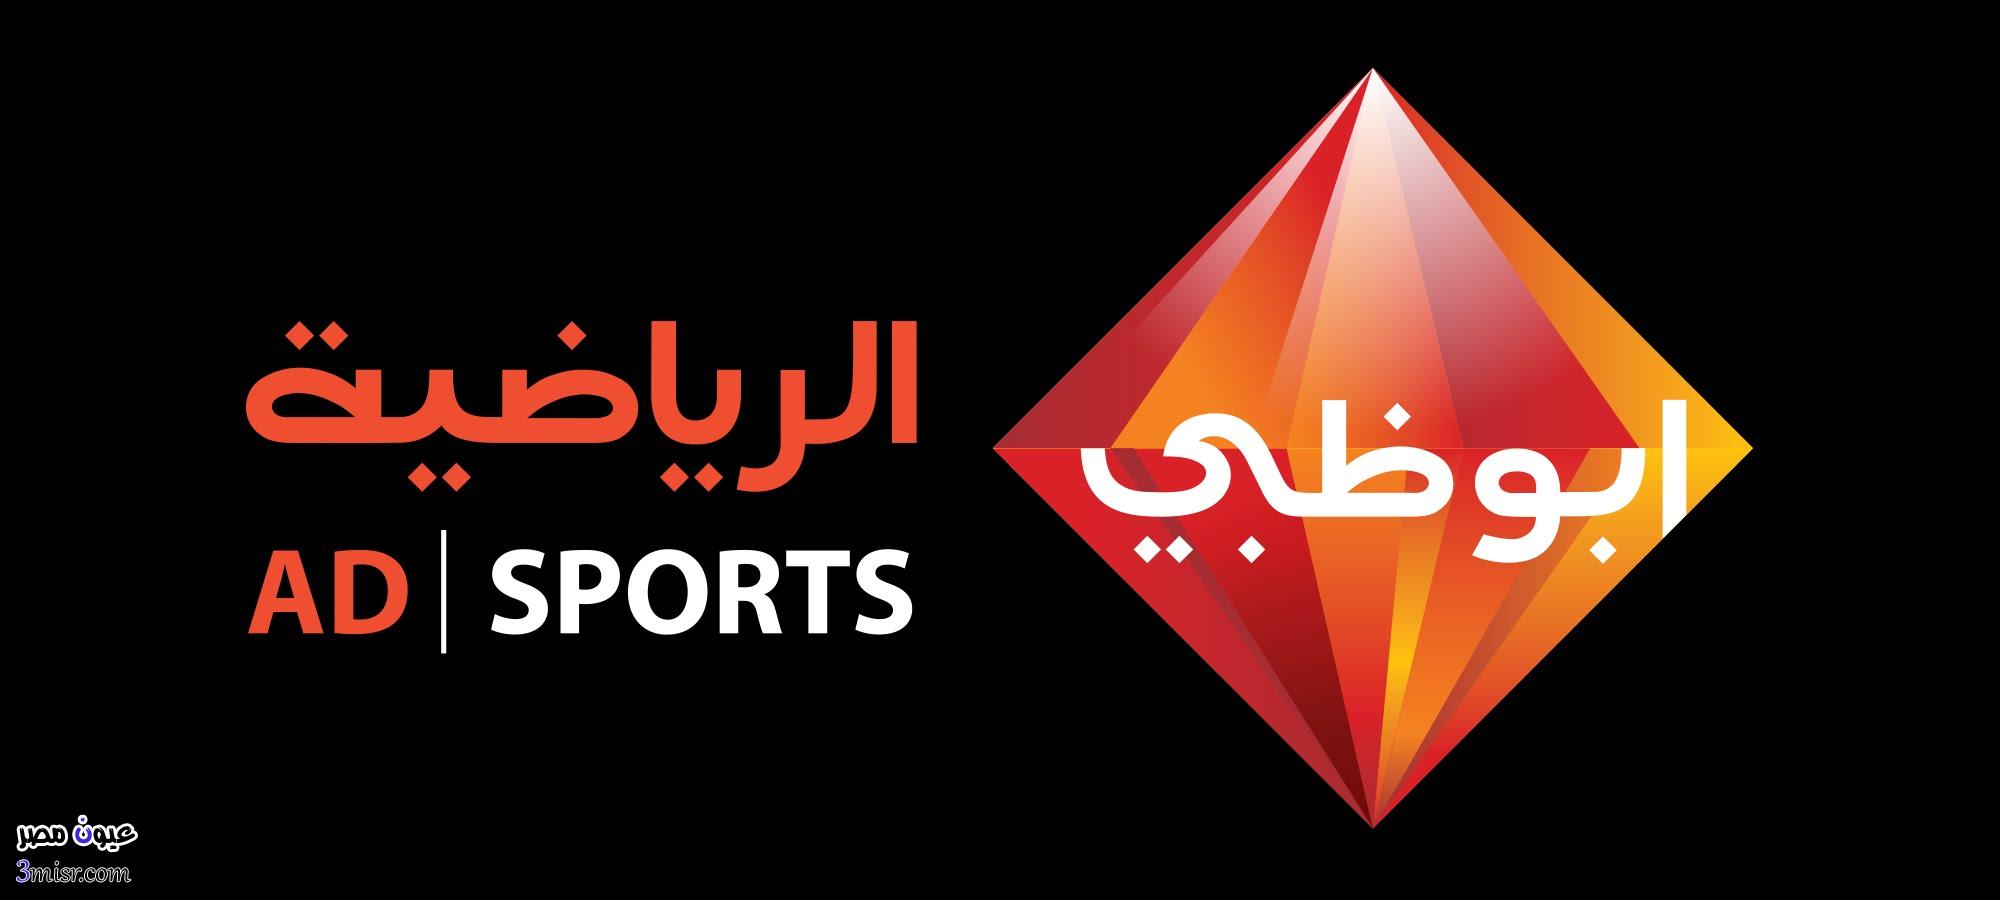 تردد قناة ابو ظبي الرياضية الناقلة لمباراة منتخب مصر والسنغال وزامبيا